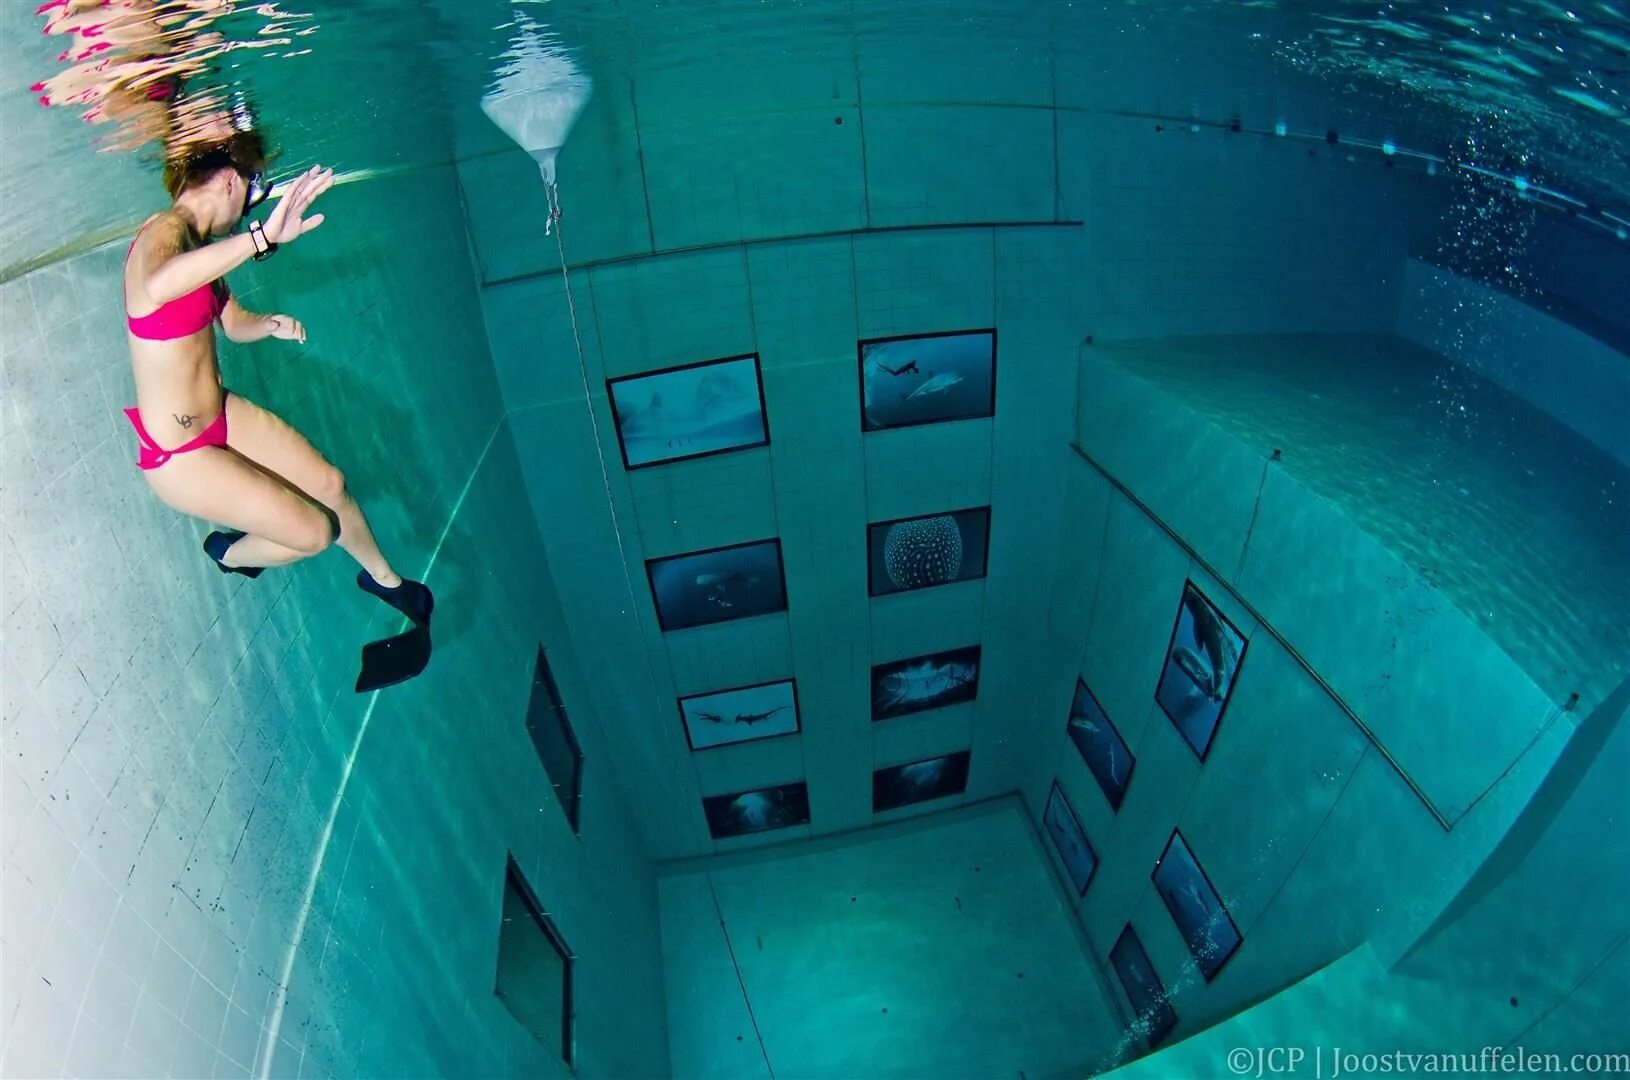 6 метров глубина. Самый глубокий бассейн в мире Немо 33. Бассейн Немо 33 Бельгия. Немо 33 бассейн глубина. Фридайвер самый глубокий бассейн в мире.